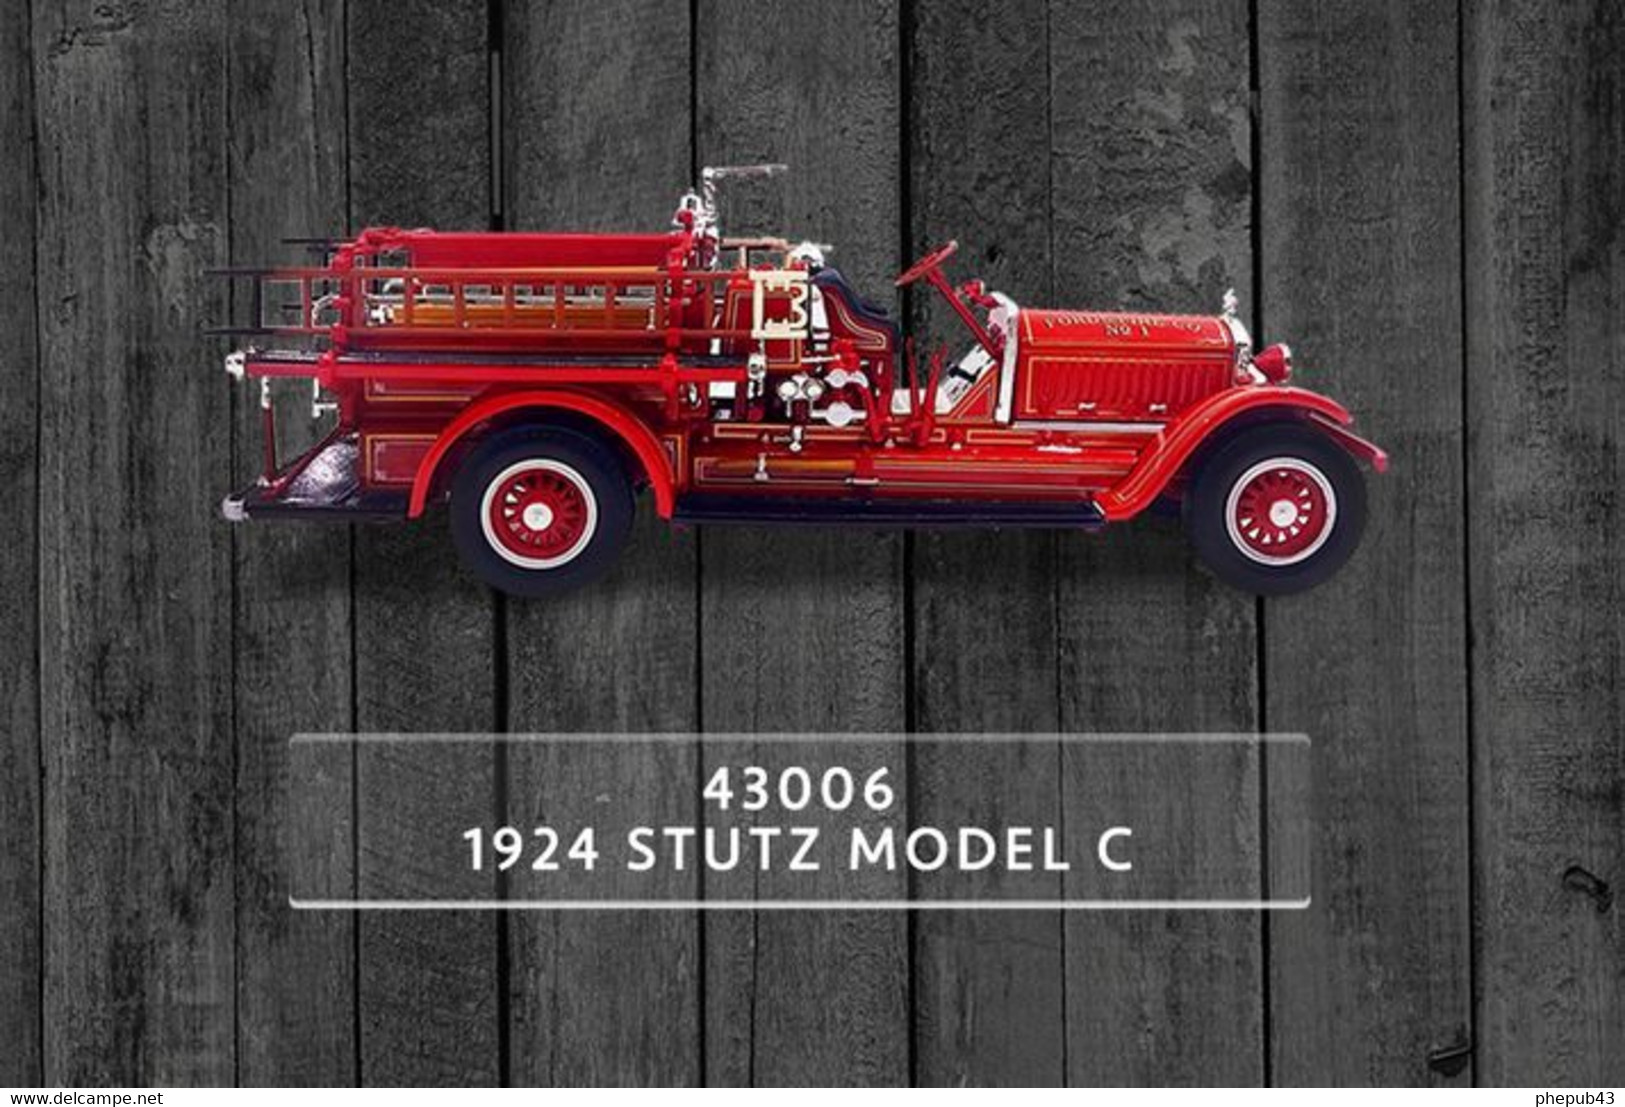 Stutz Model C - Ford Fire Co - 1924 - Lucky Die Cast - Trucks